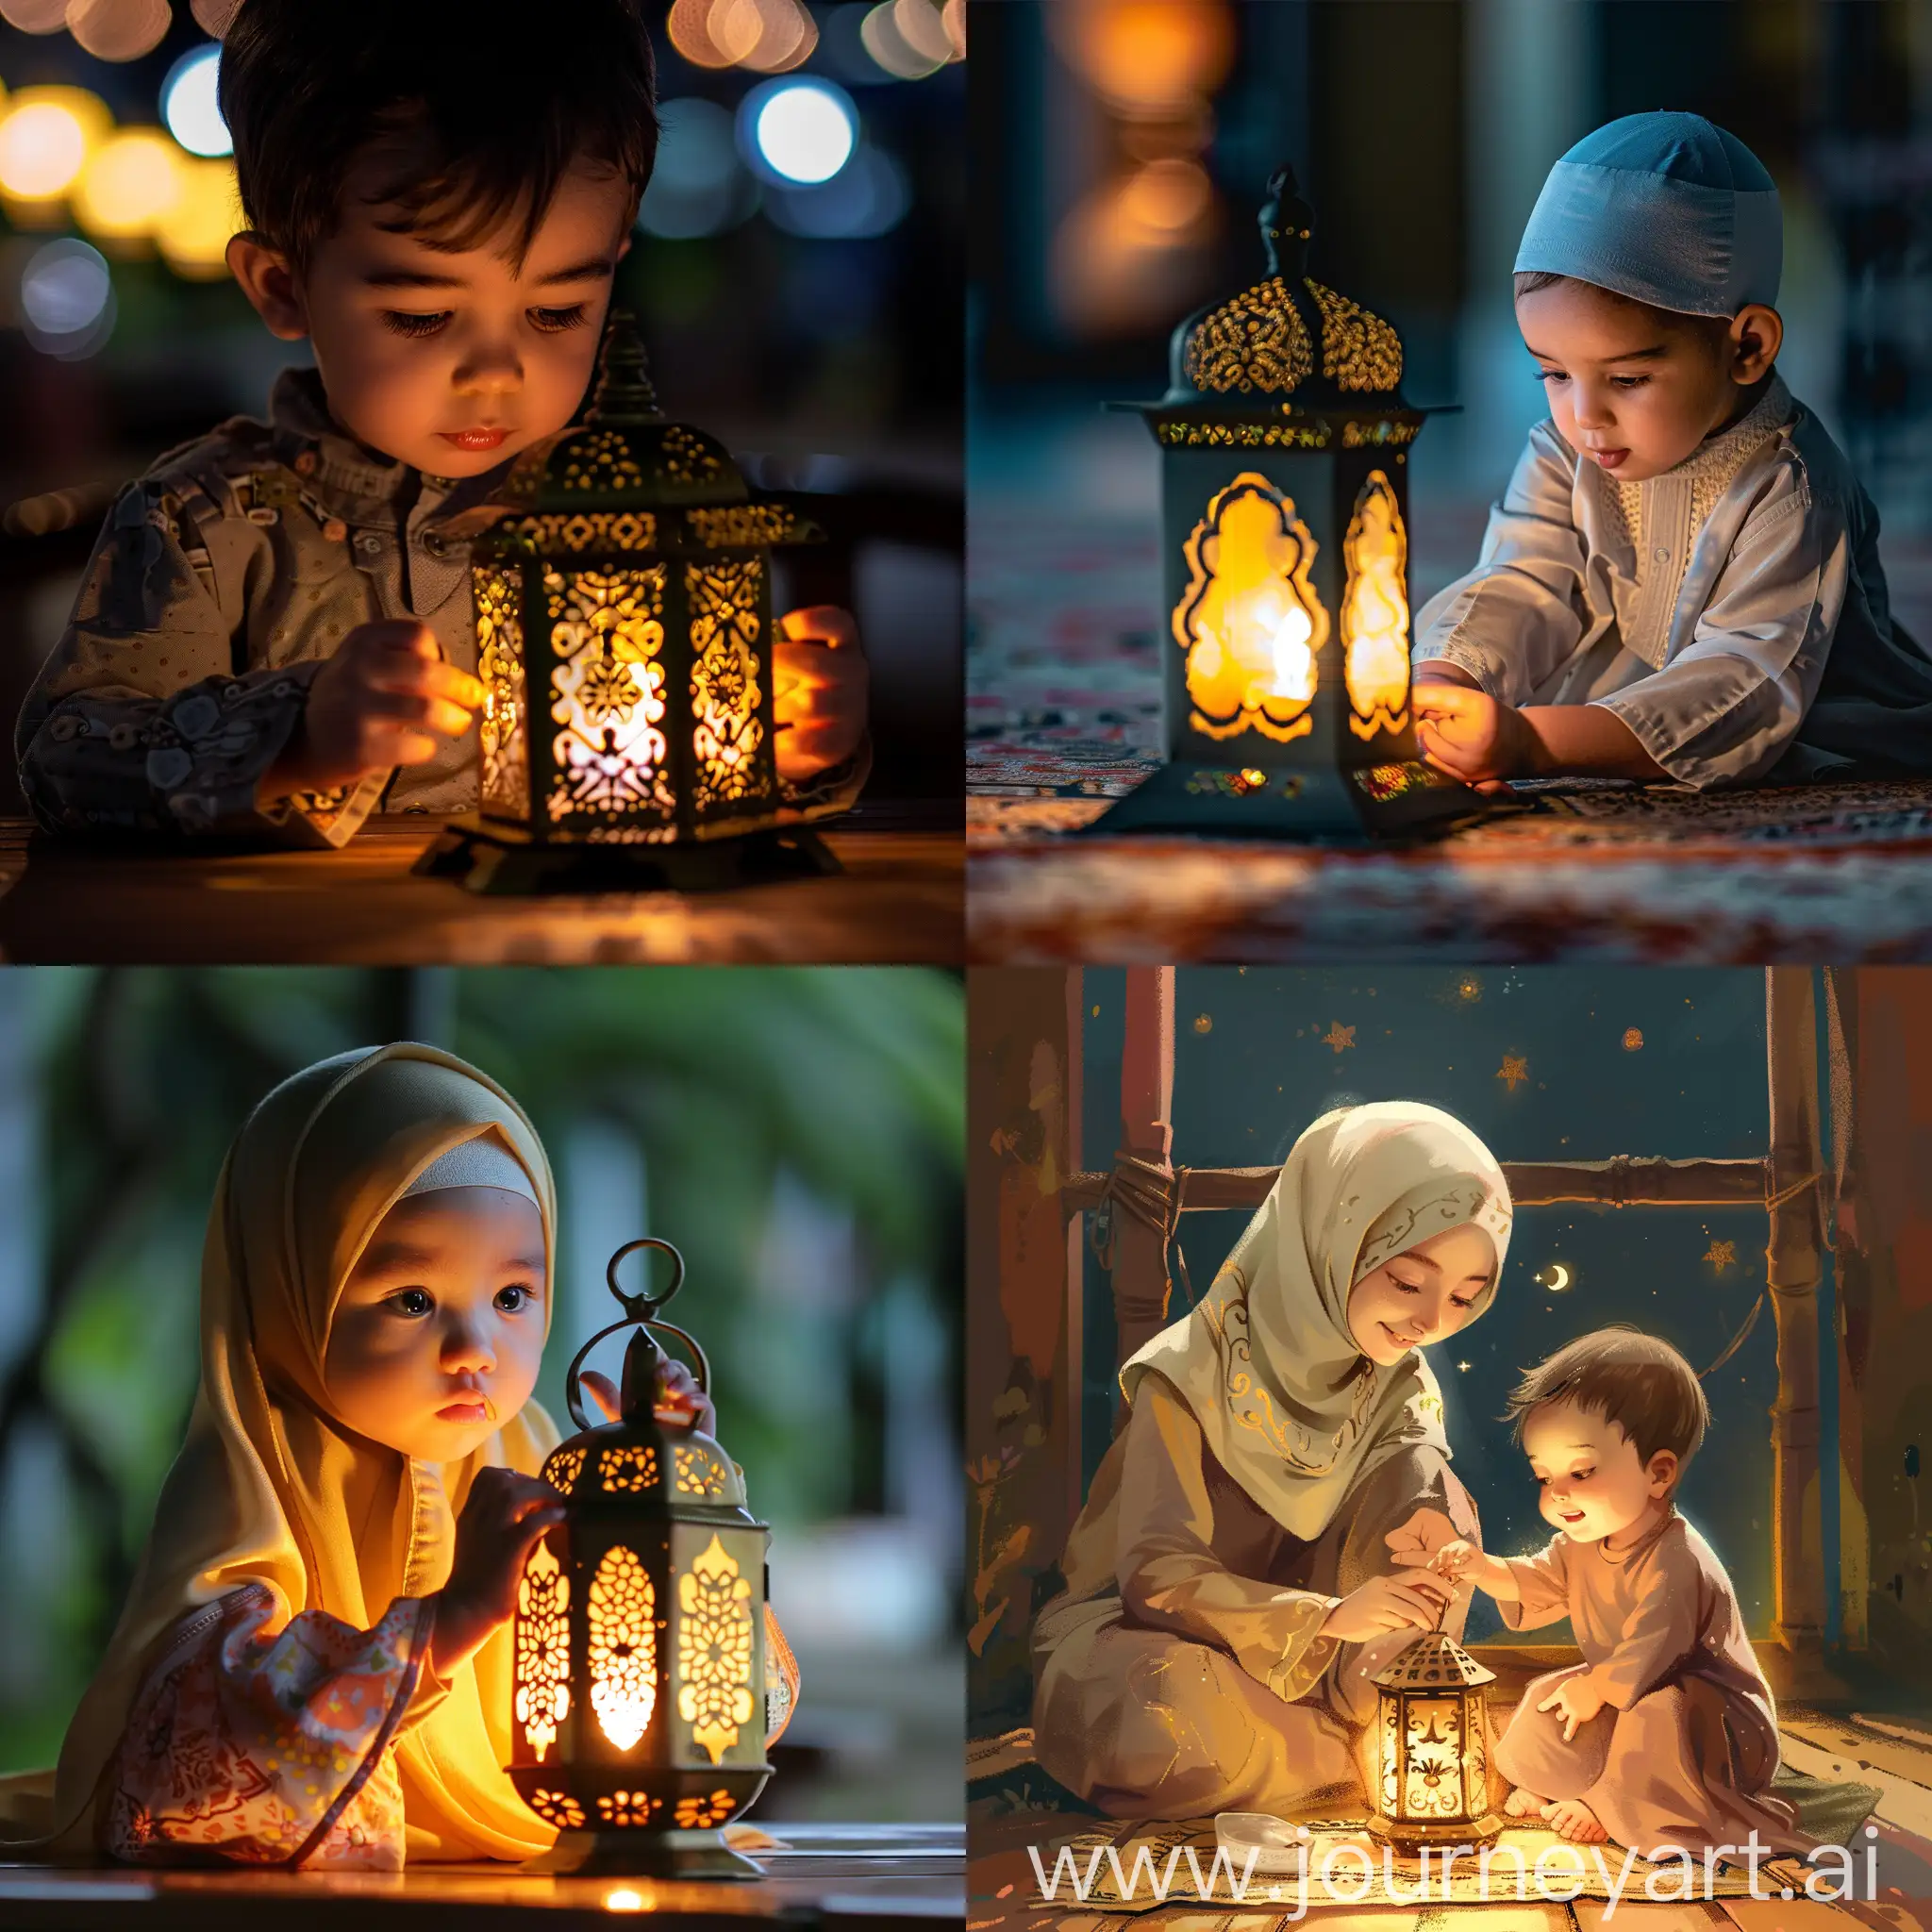 تهنيه بشهر رمضان 
وصوله طفل يعمل فانوس
